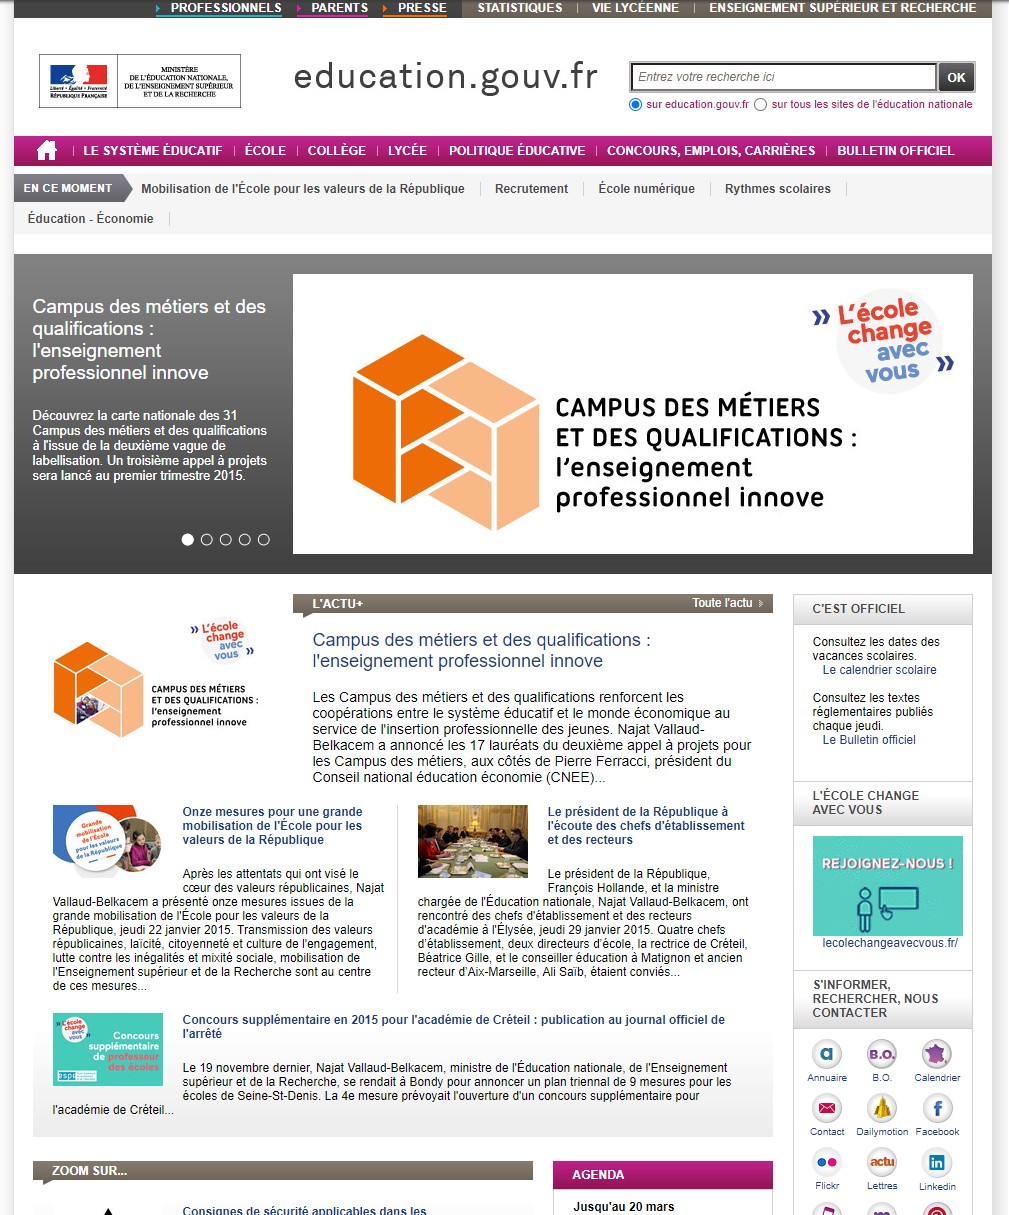 Site education.gouv.fr le 03 février 2015 selon le site Weybackmachine